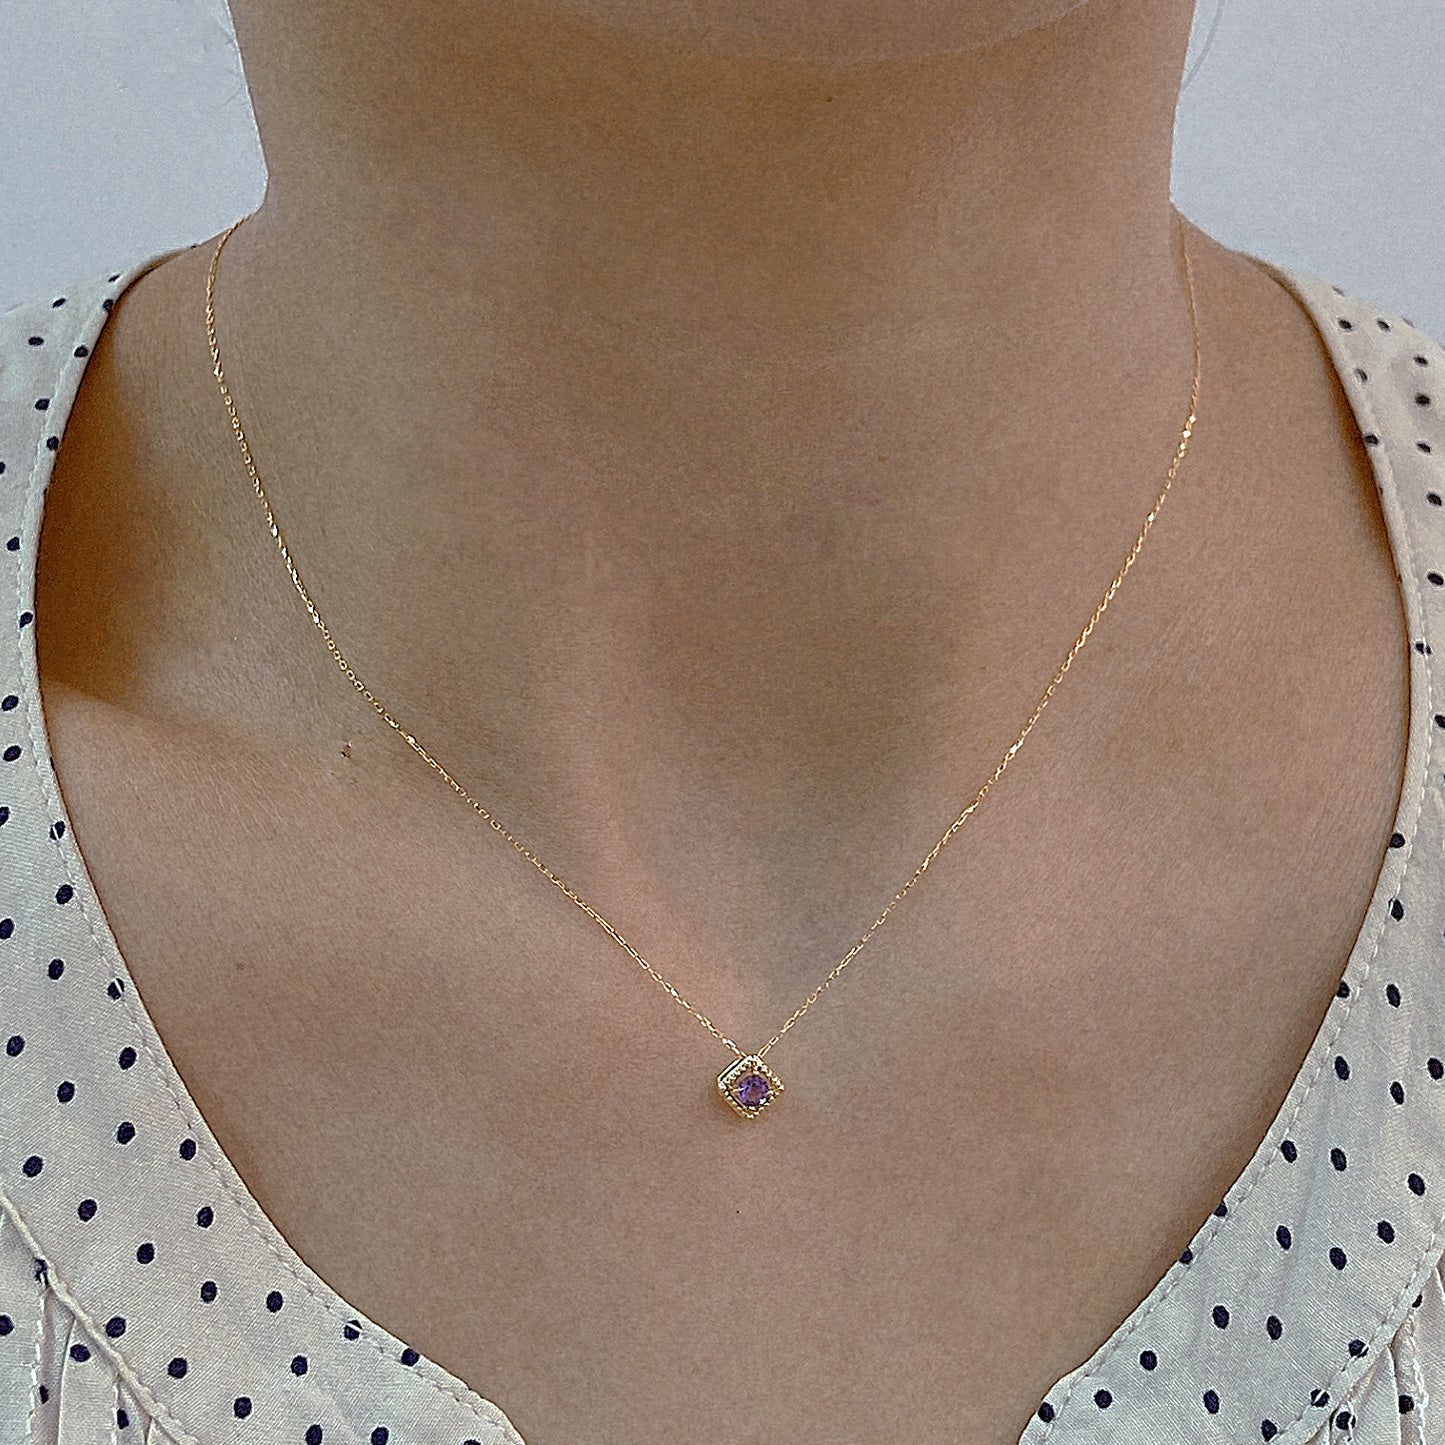 Rhombus Birthstone Necklace (Feb - Amethyst)